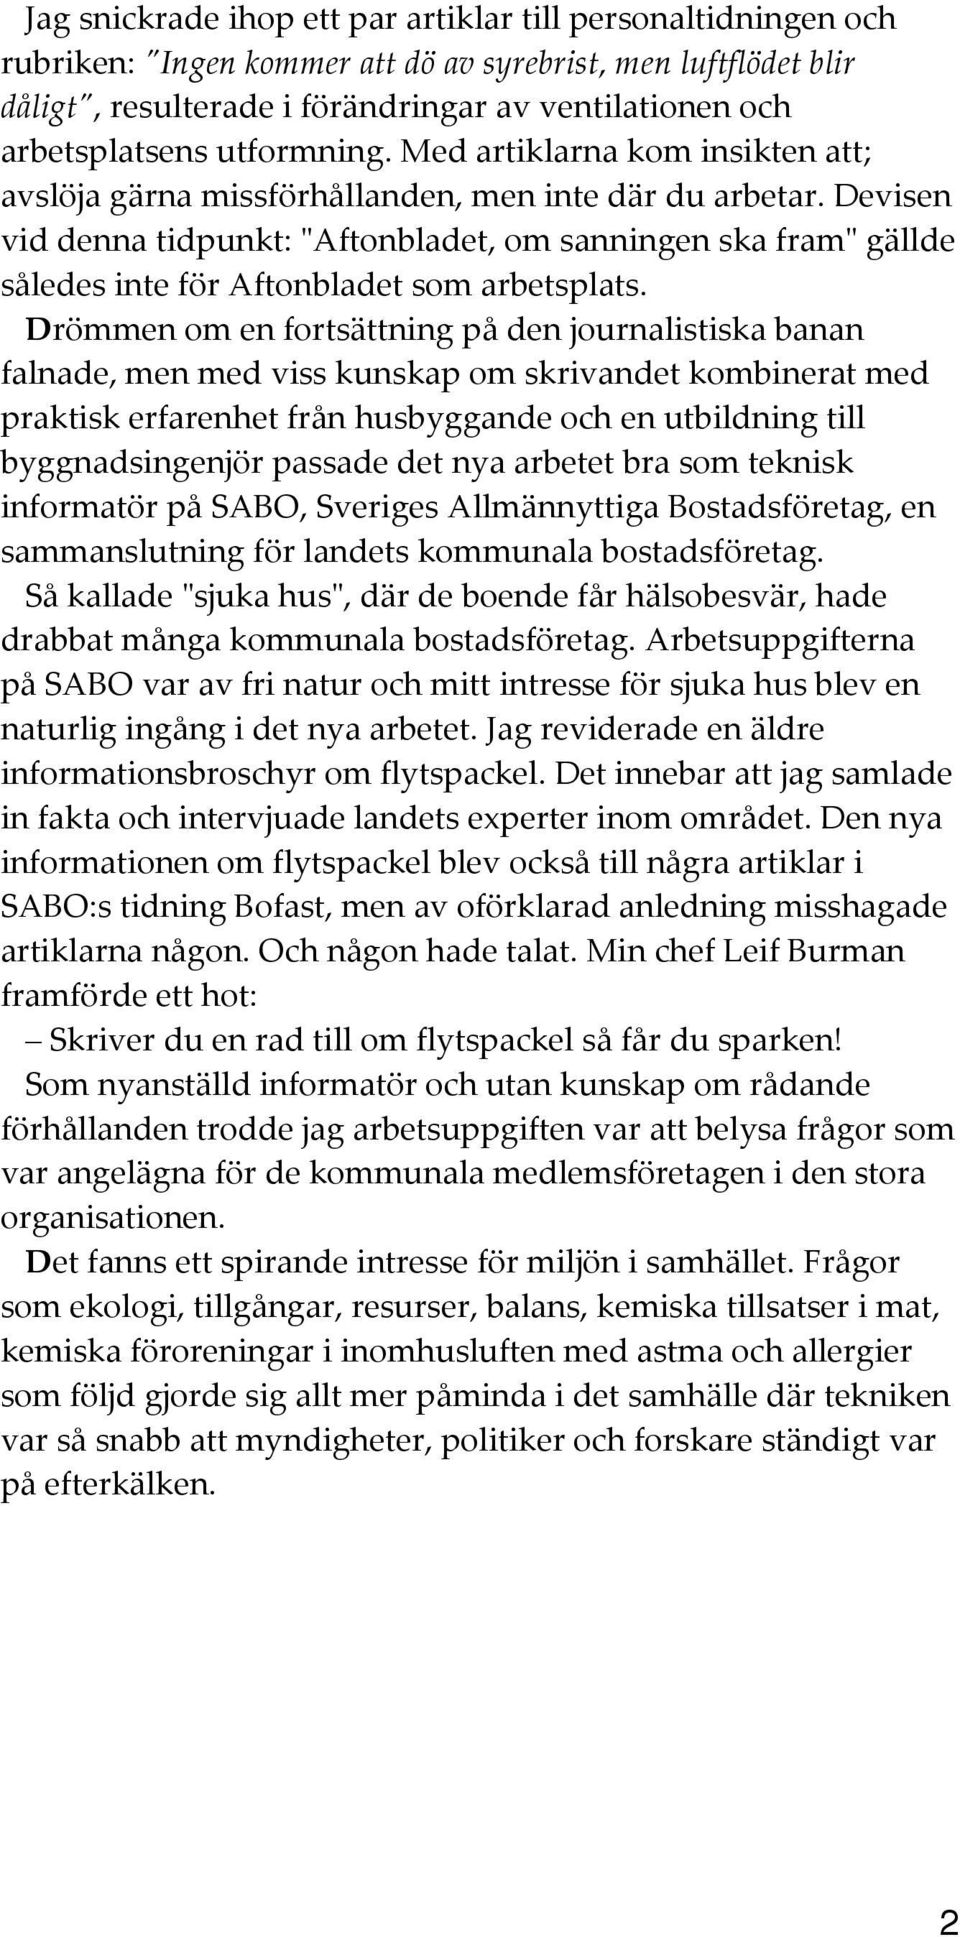 Devisen vid denna tidpunkt: "ʺAftonbladet, om sanningen ska fram"ʺ gällde således inte för Aftonbladet som arbetsplats.